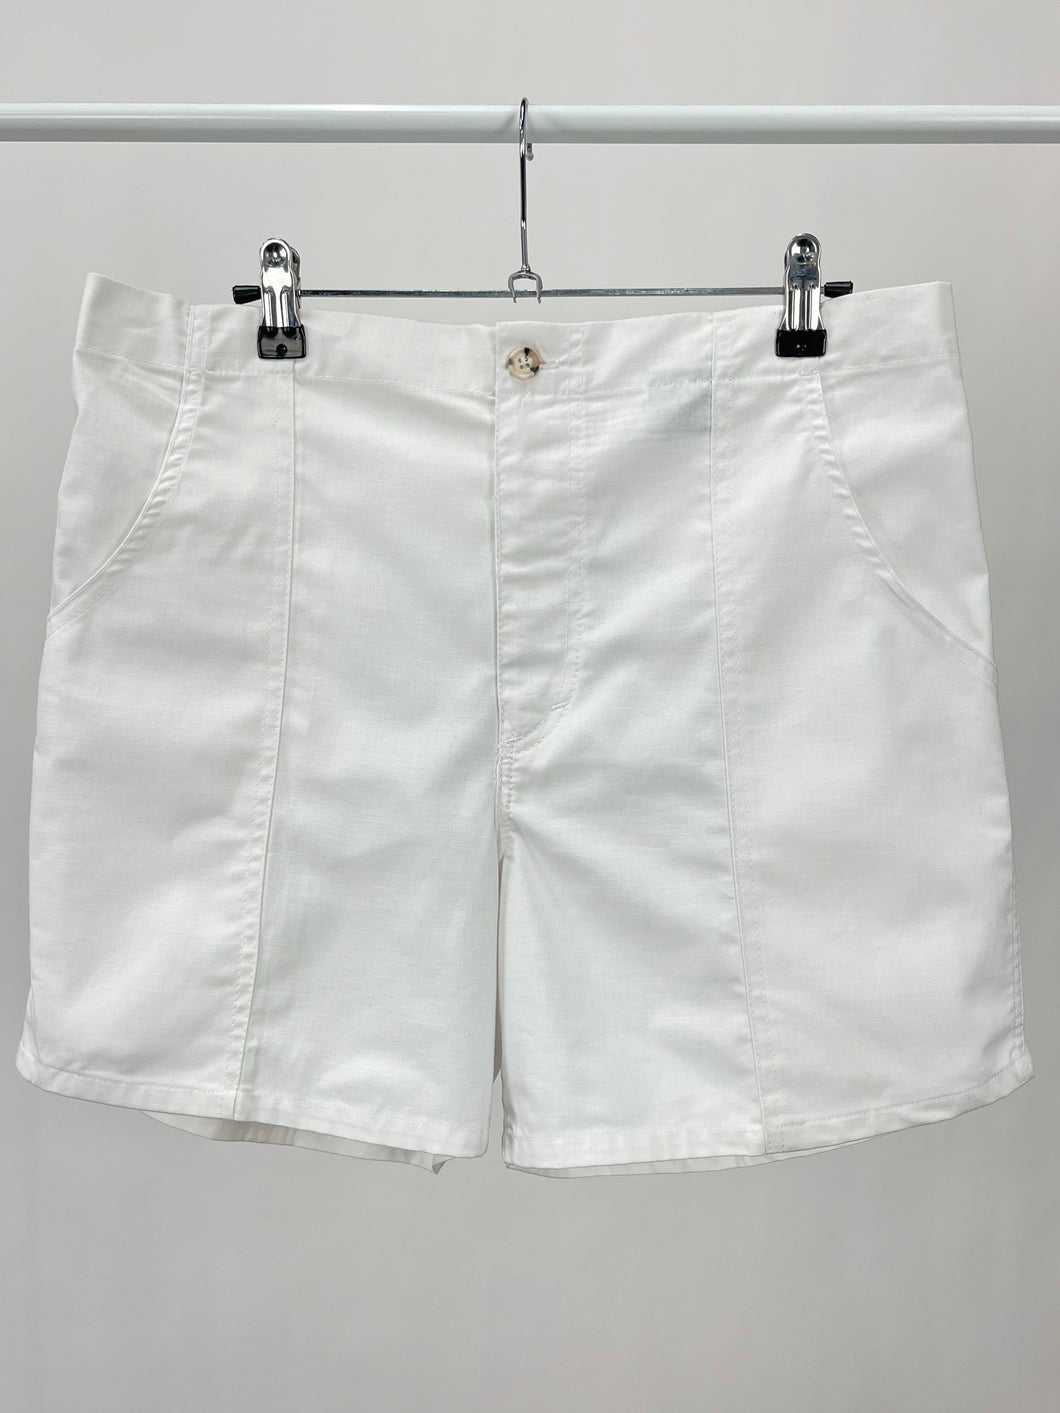 Vintage White Cotton Shorts (W34)